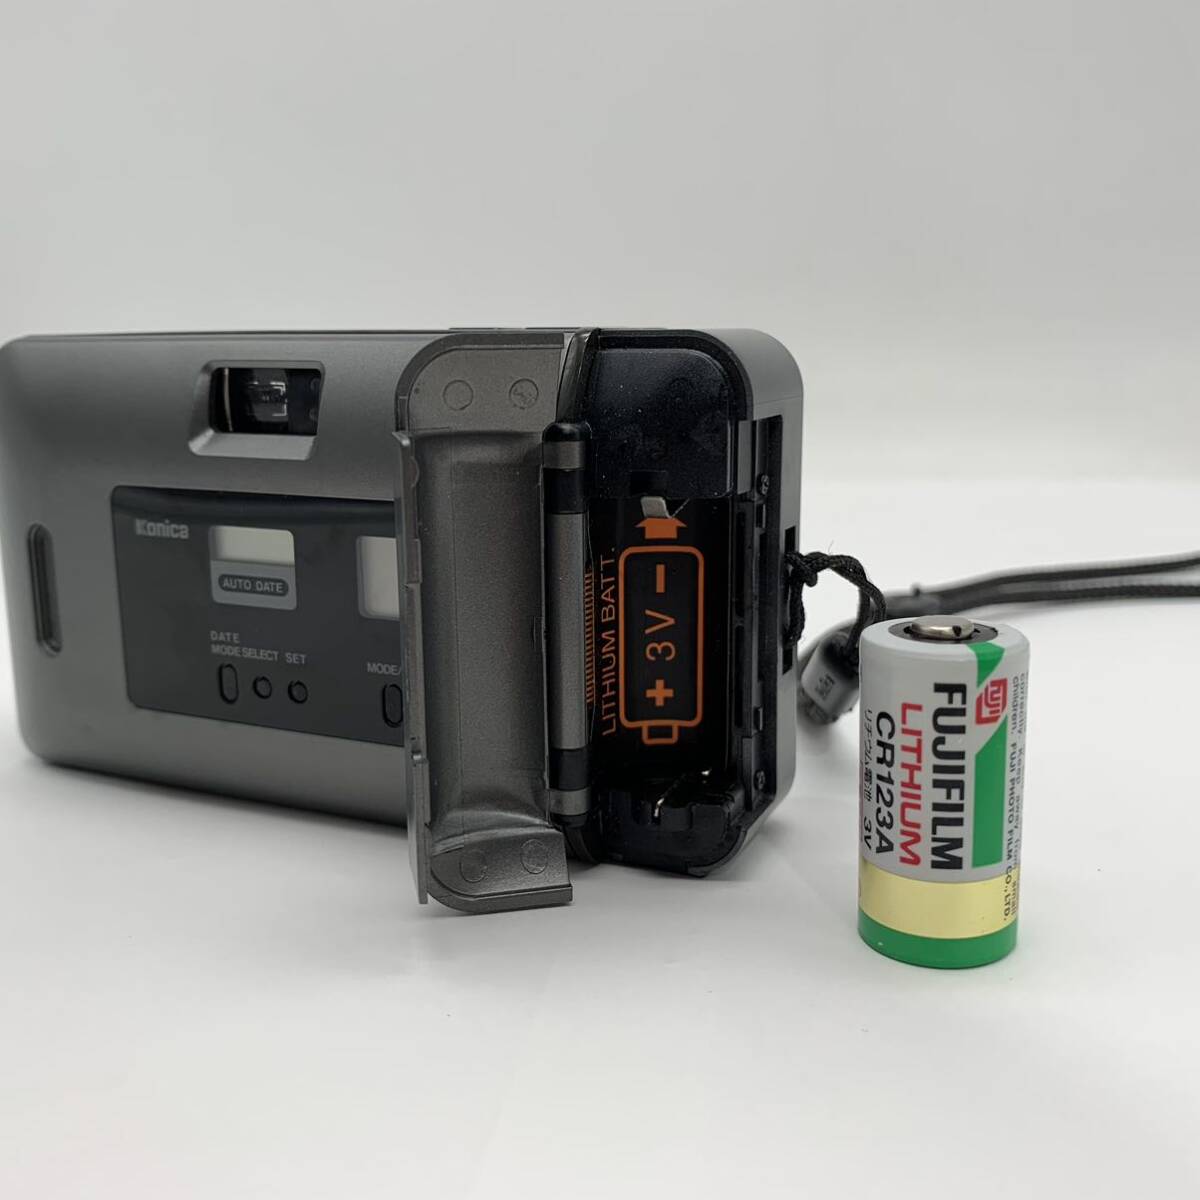 ◎【売り切り】Konica（コニカ）コンパクトフィルムカメラ BiG mini ビッグミニ BM-301S KONICA LENS 35mm F3.5